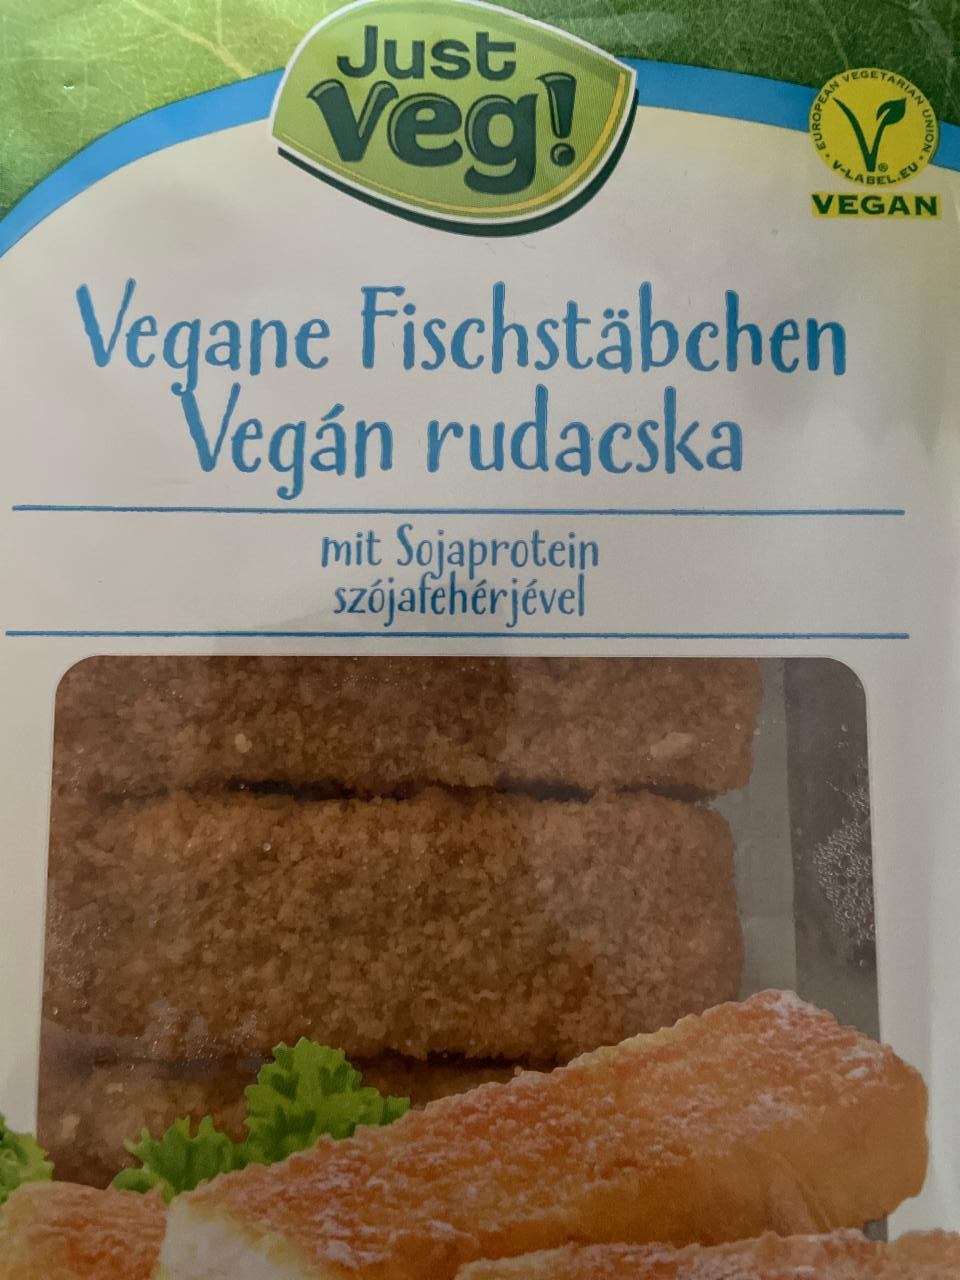 Fotografie - Just Veg! Vegane Fischstäbchen 